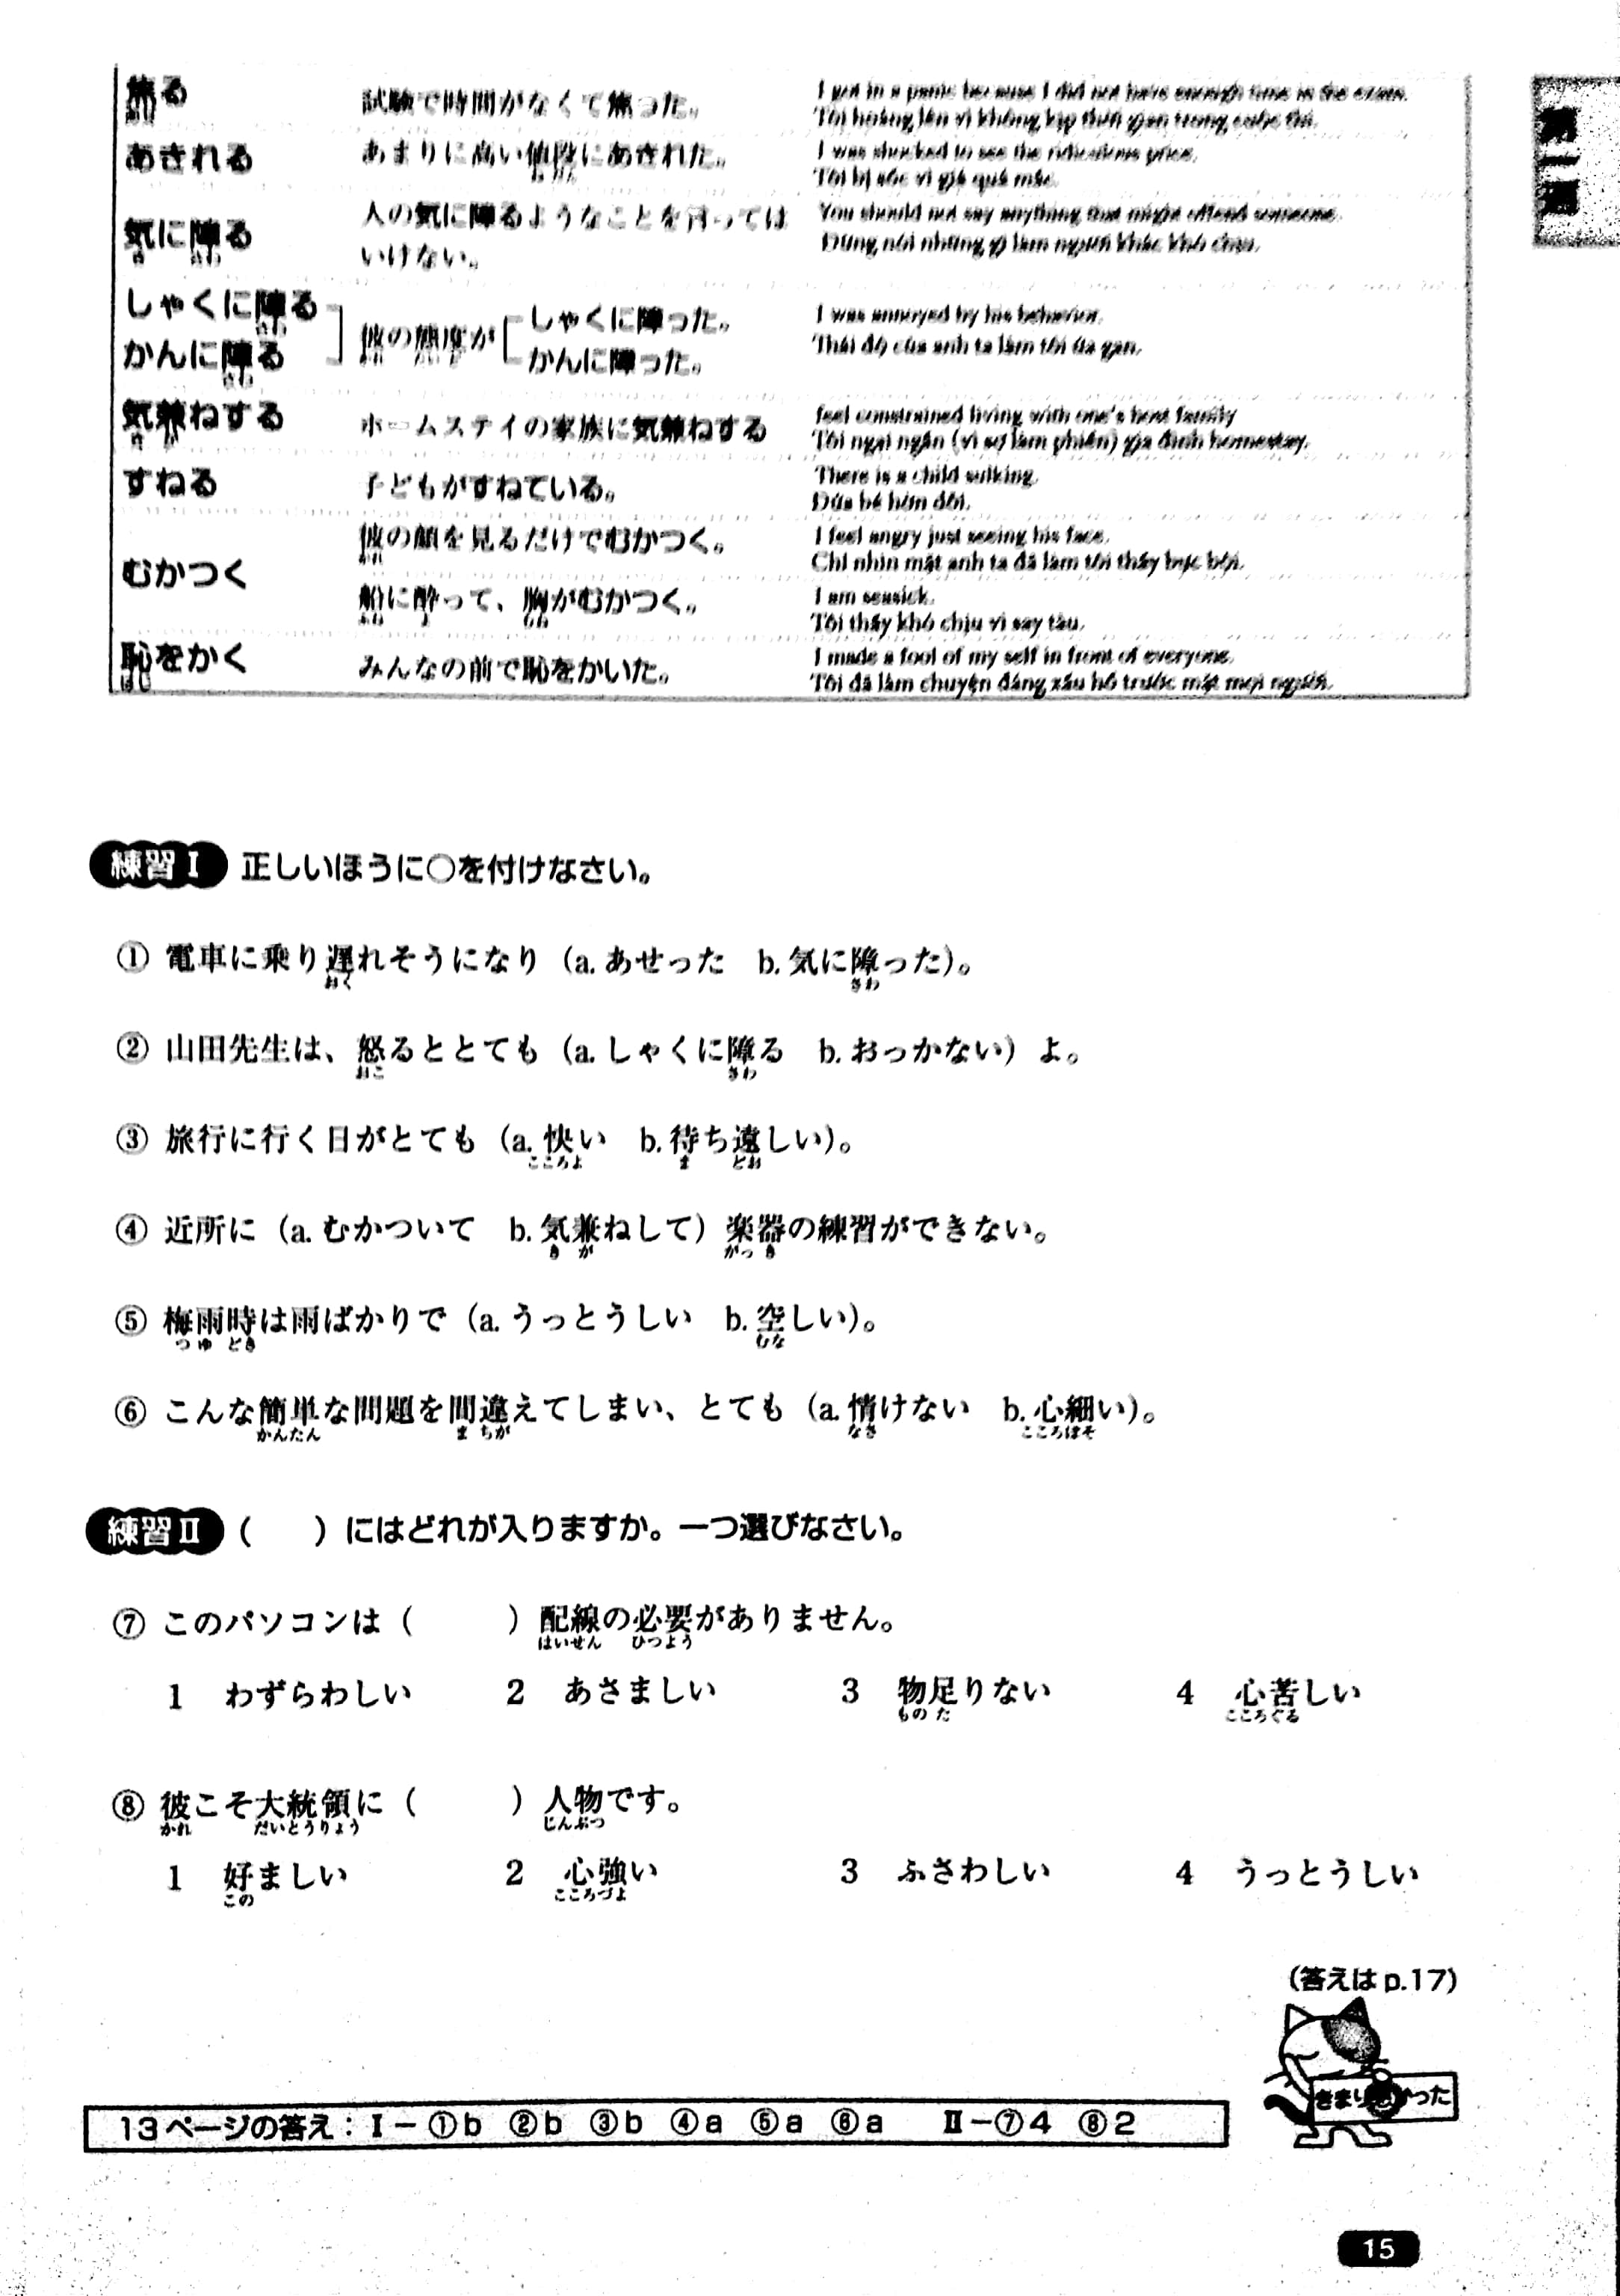 Luyện Thi Năng Lực Nhật Ngữ N1 – Từ Vựng PDF